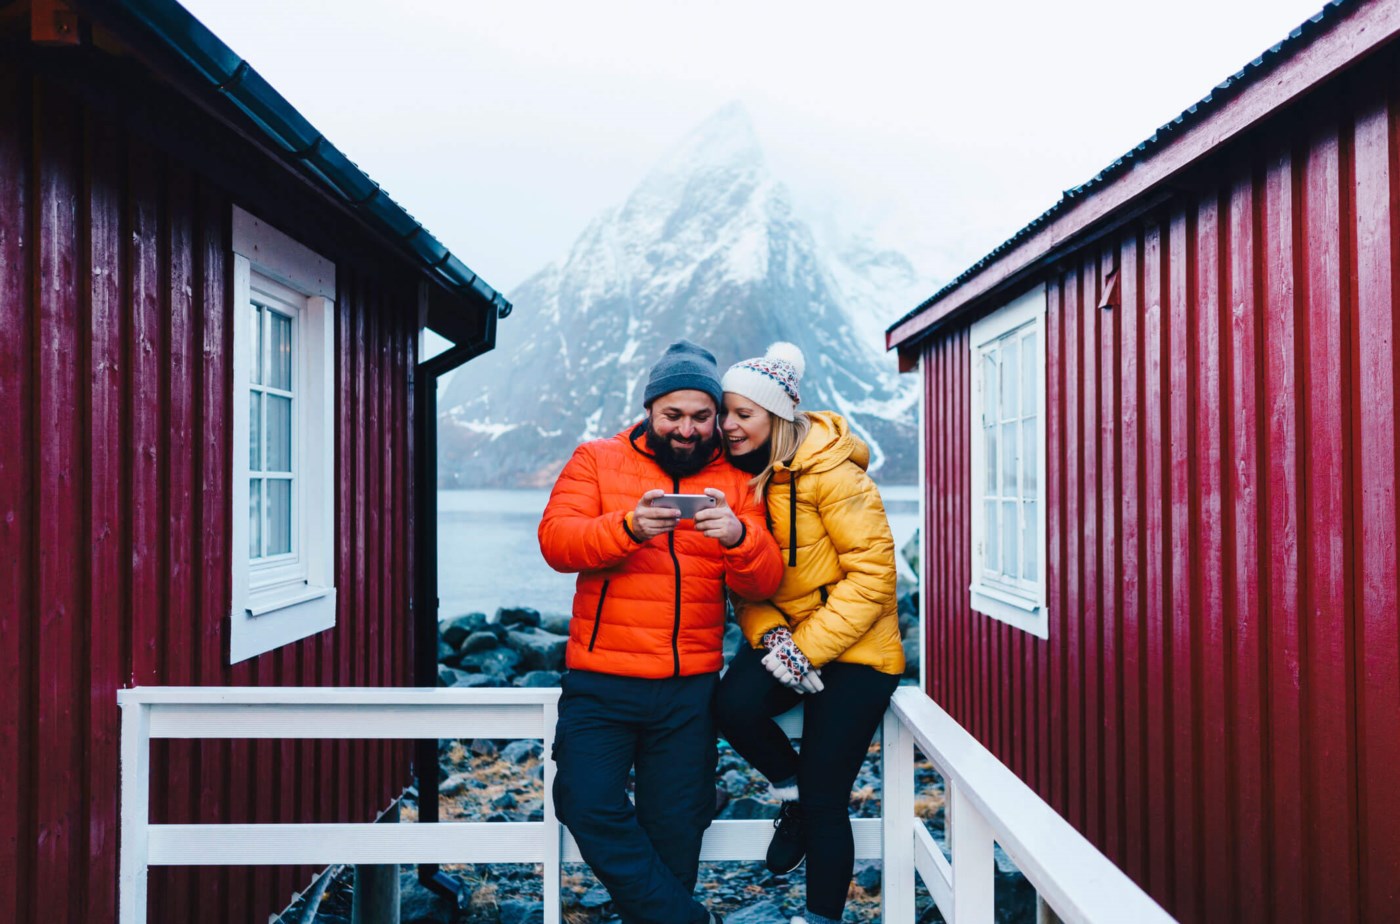 Et par i vinterklær ler sammen mens de ser på en mobiltelefon, stående mellom tradisjonelle røde bygg med en majestetisk, snødekt fjelltopp i bakgrunnen.